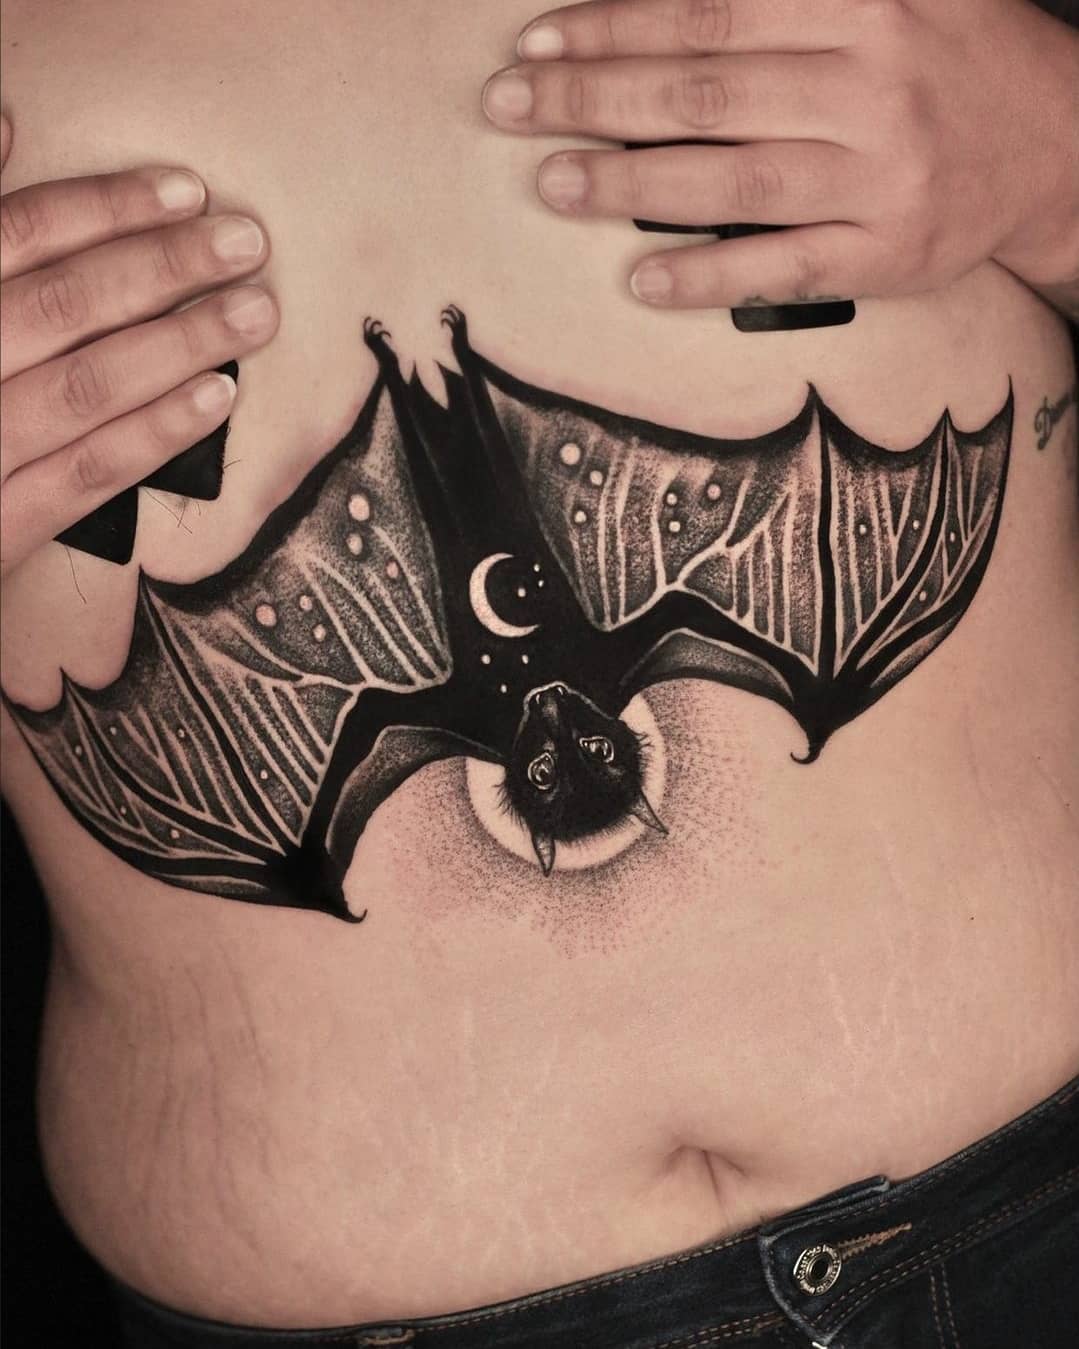 31 Hottest Under Breast Tattoo Designs